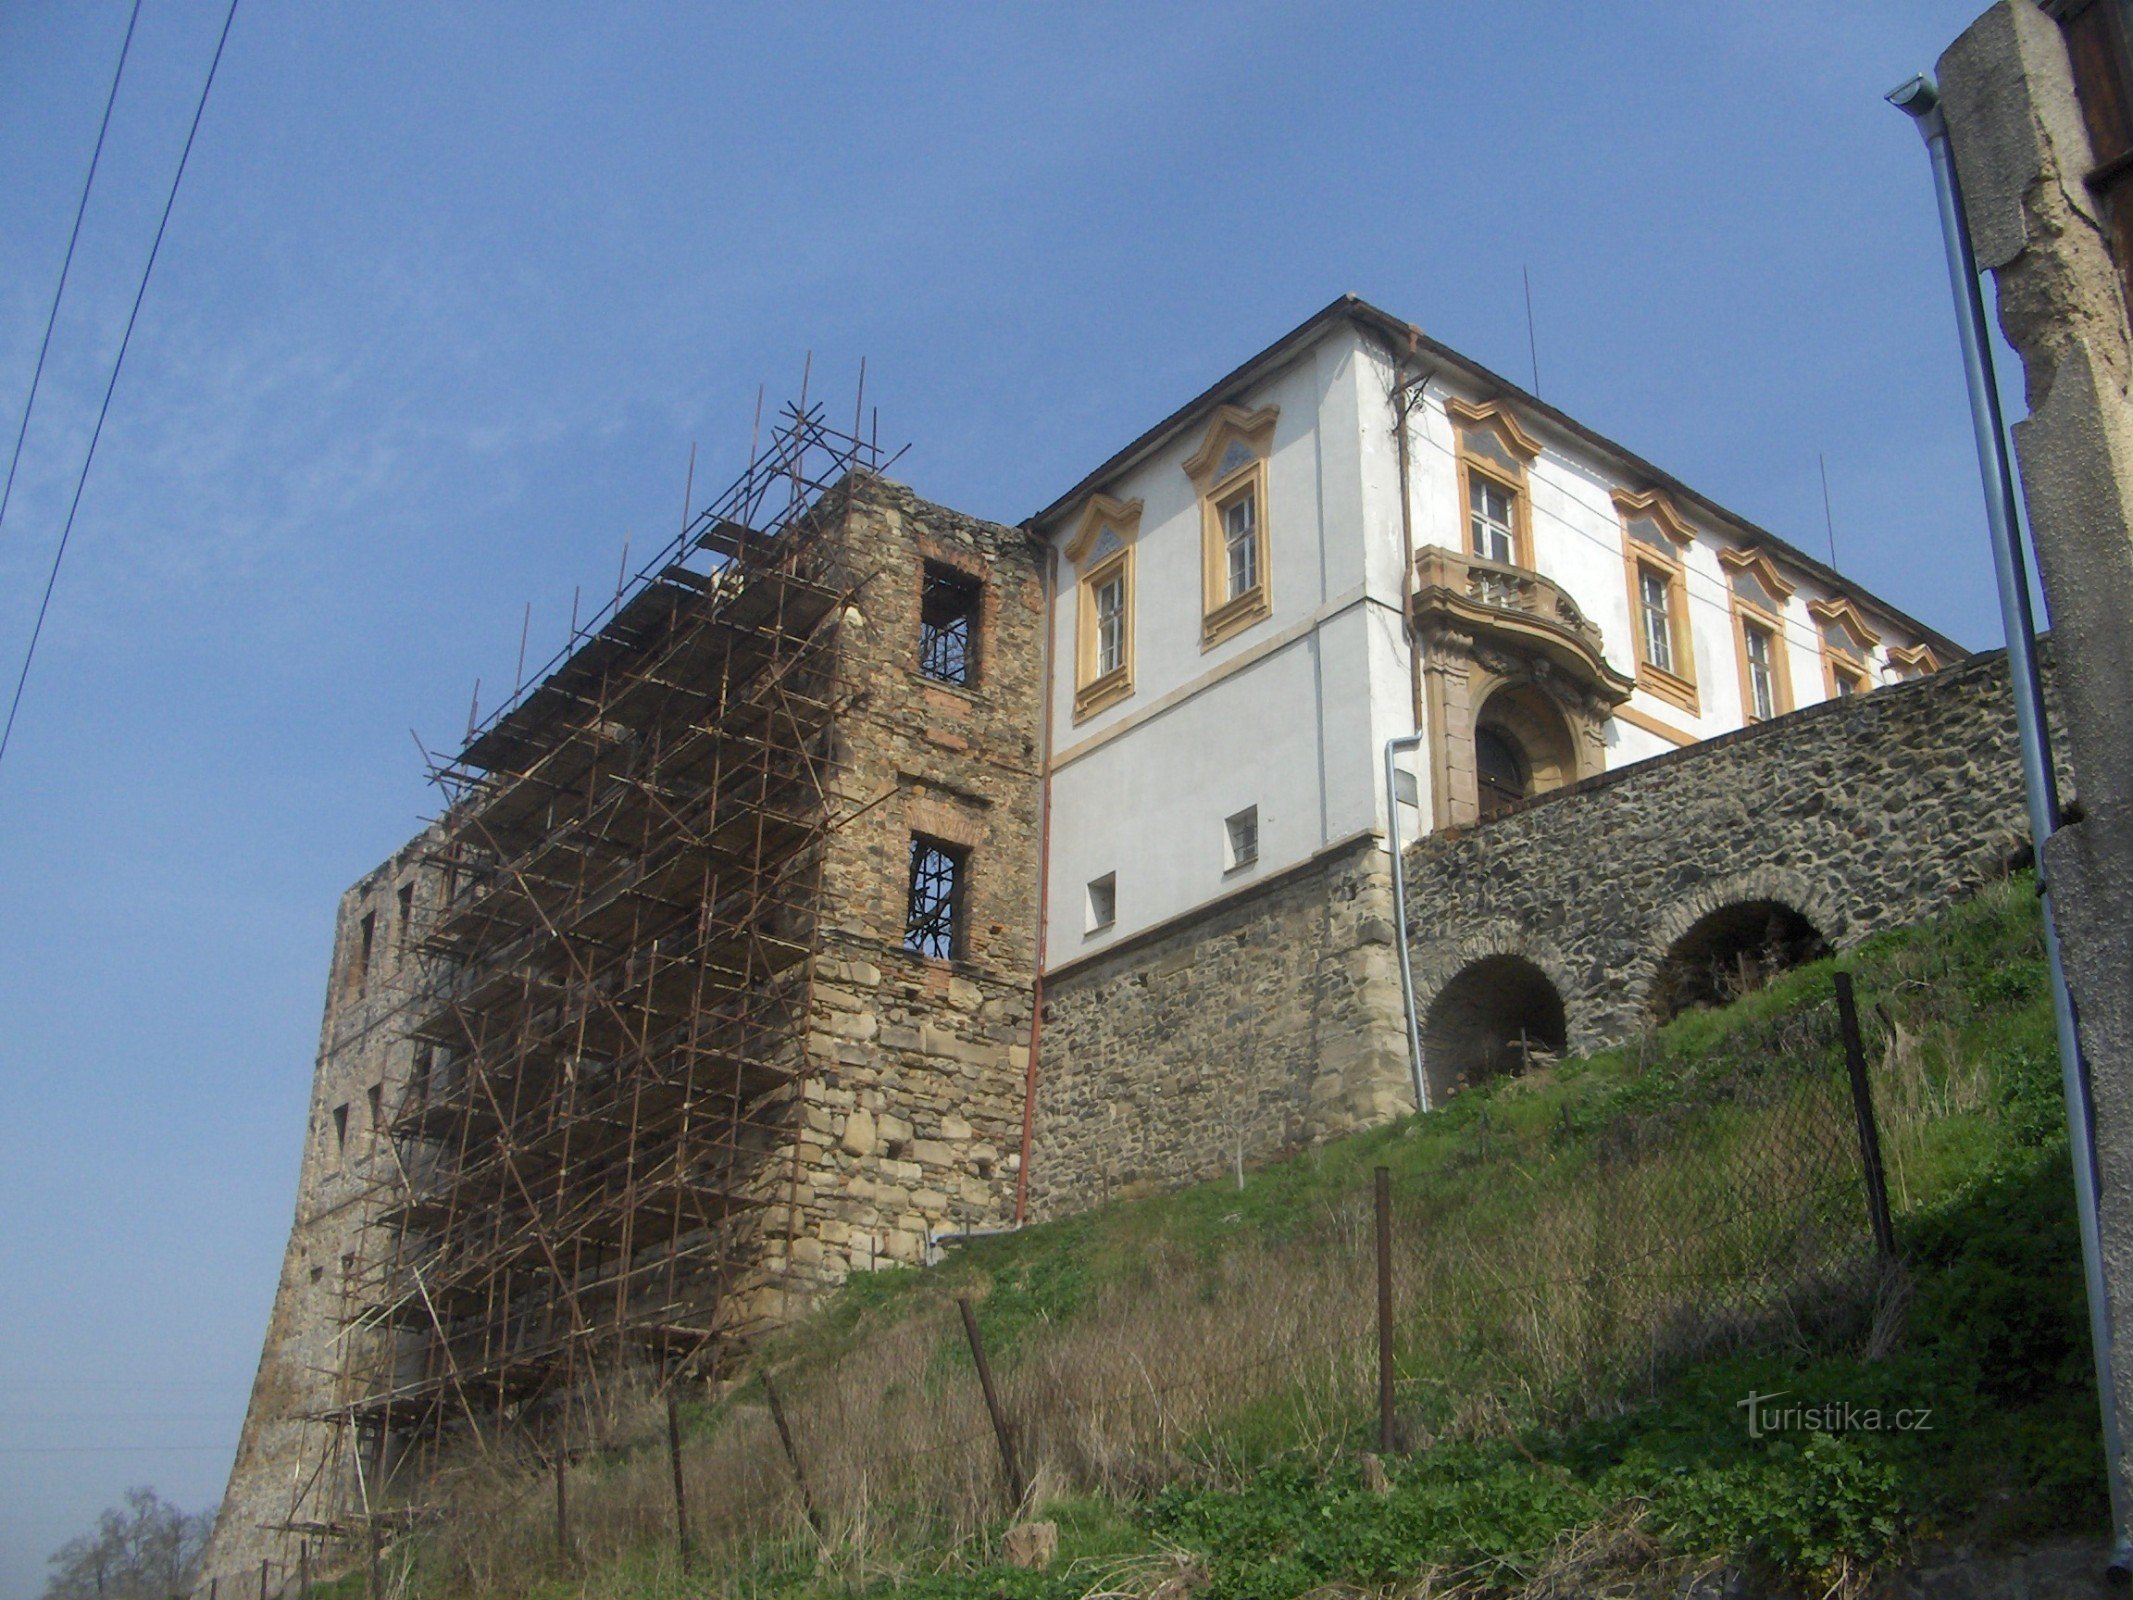 Castel nelivrat în Chvatěruby